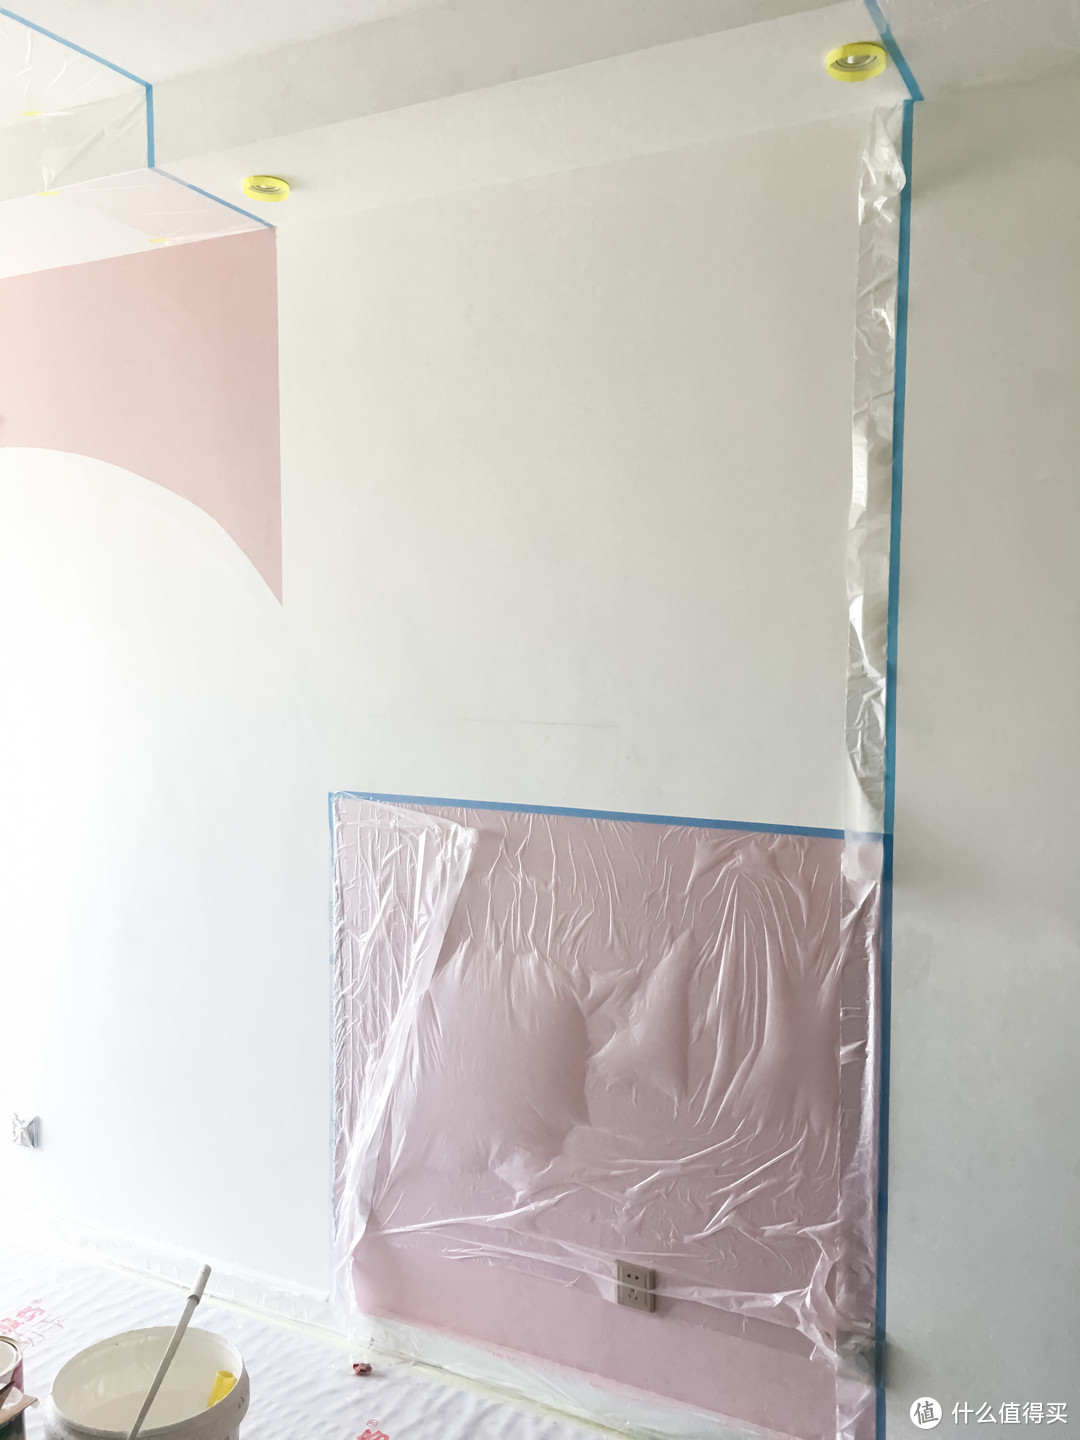 立邦刷新之上篇—看师傅如何刷出一面艳冠小区的拼色墙